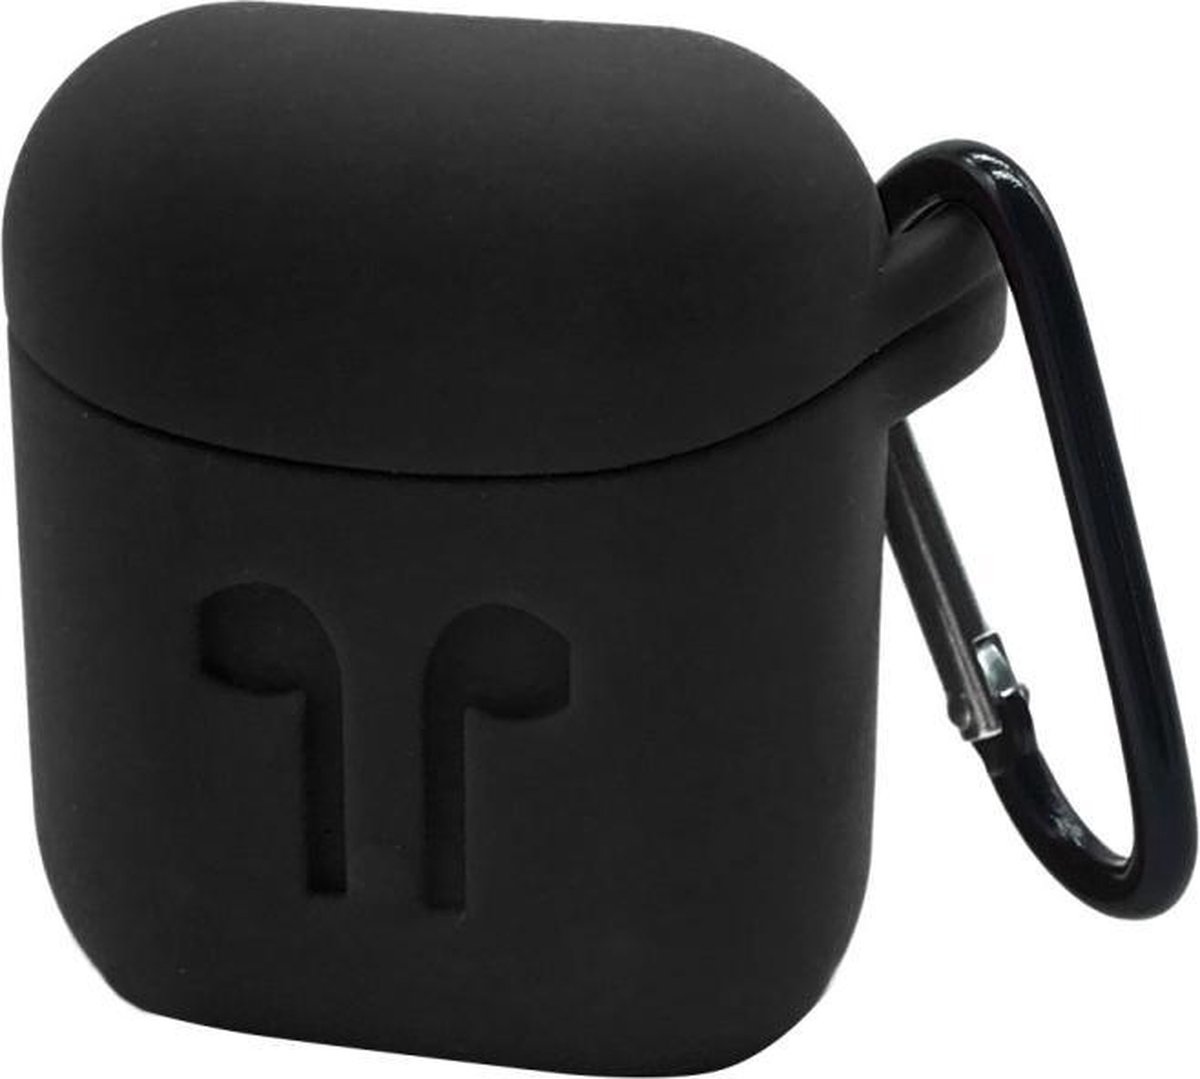 Voor Apple AirPods draagbare draadloze Bluetooth koptelefoon siliconen beschermende doos iPhone anti-verloren Dropproof opslag tas met Hook(Black)